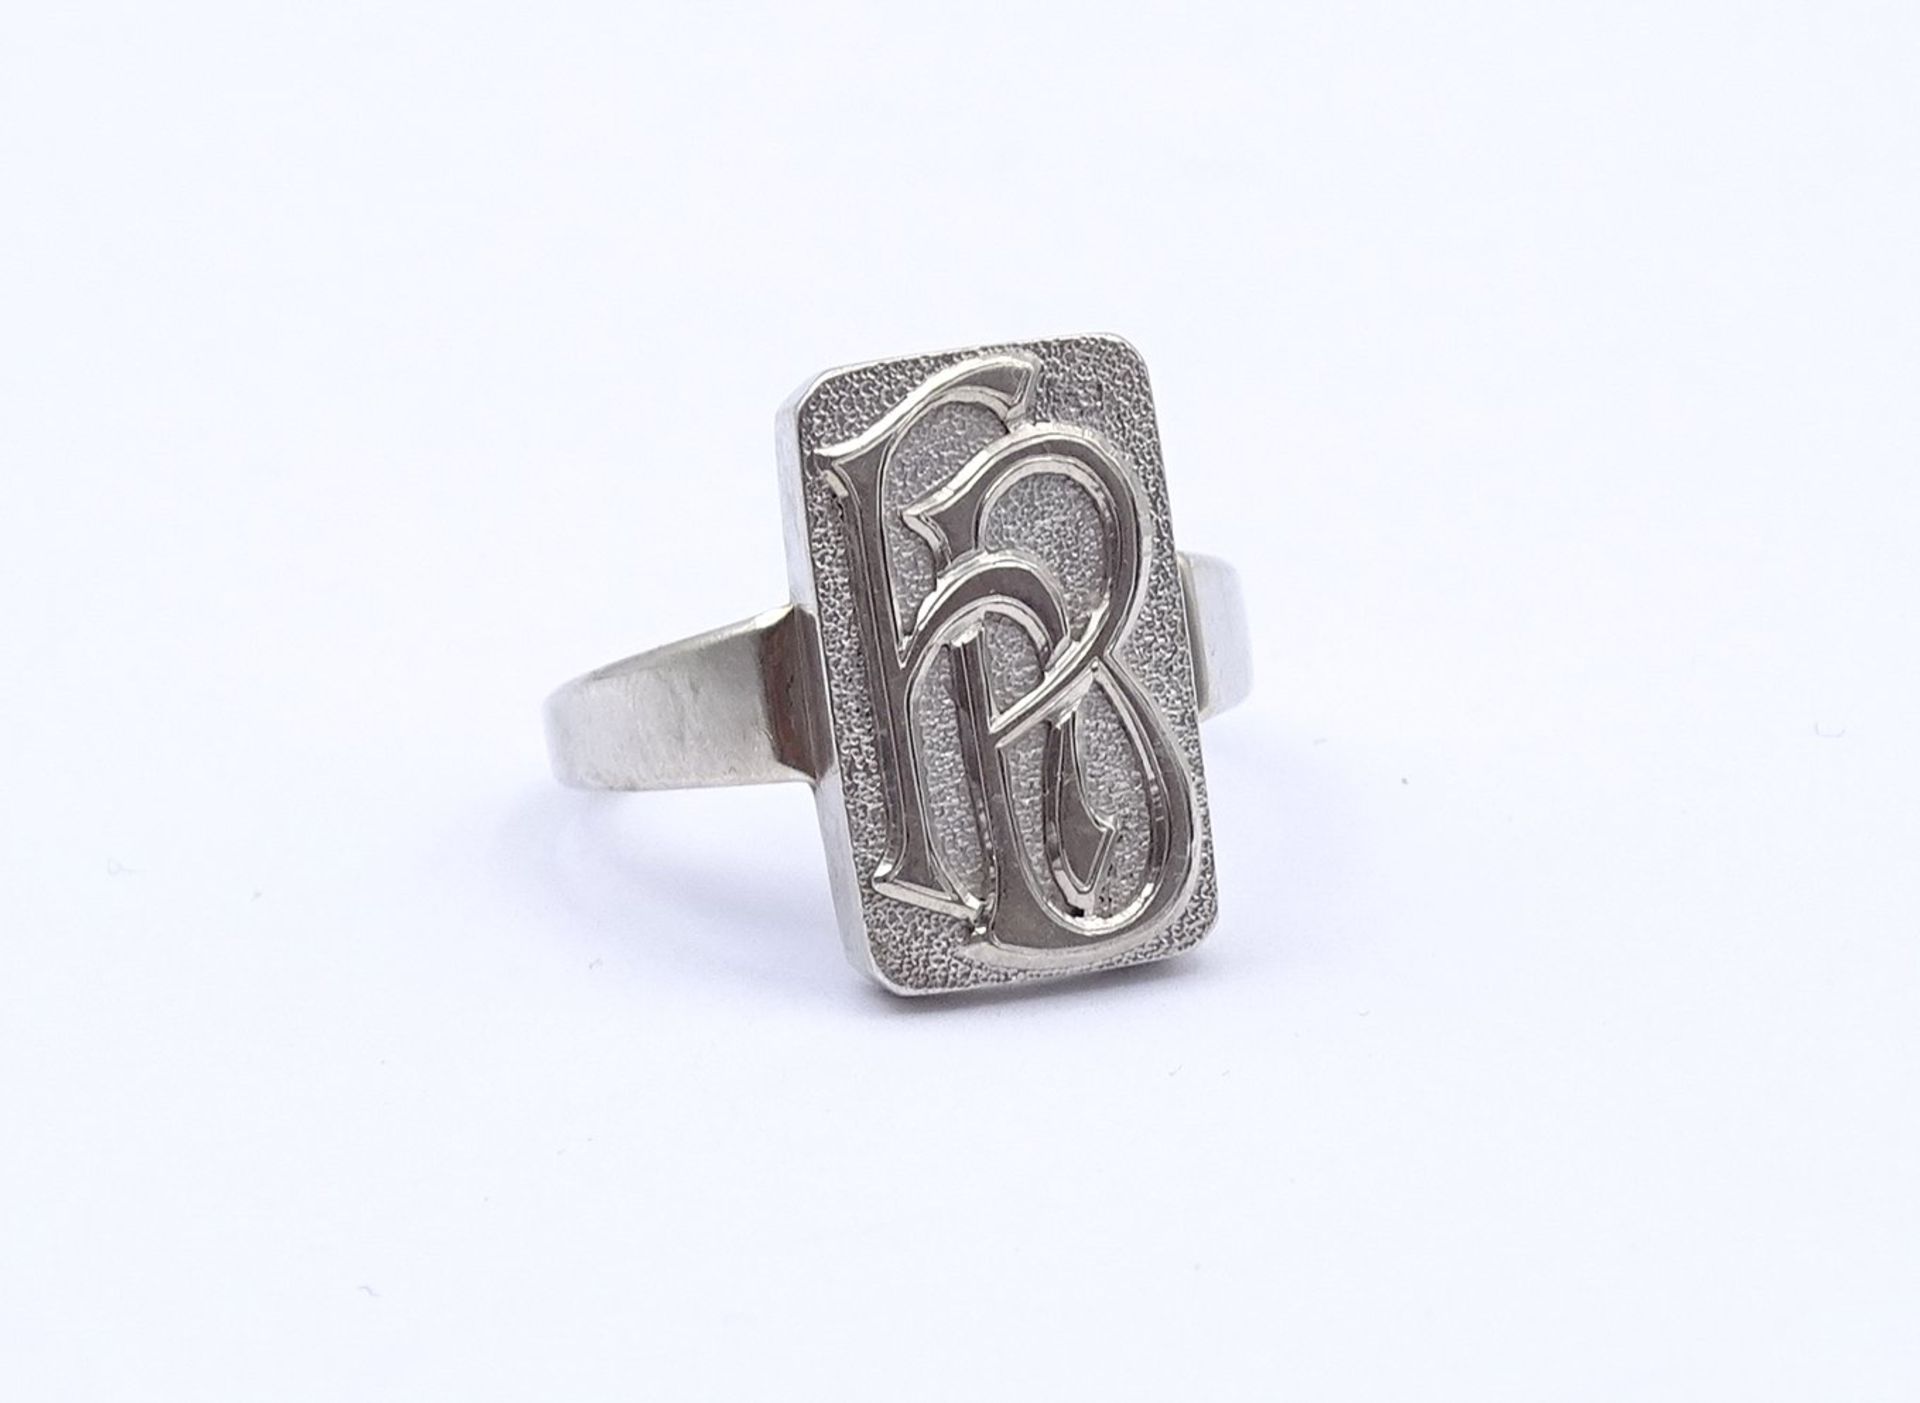 800er Silber Ring mit Initialen, 5,6g., RG 65